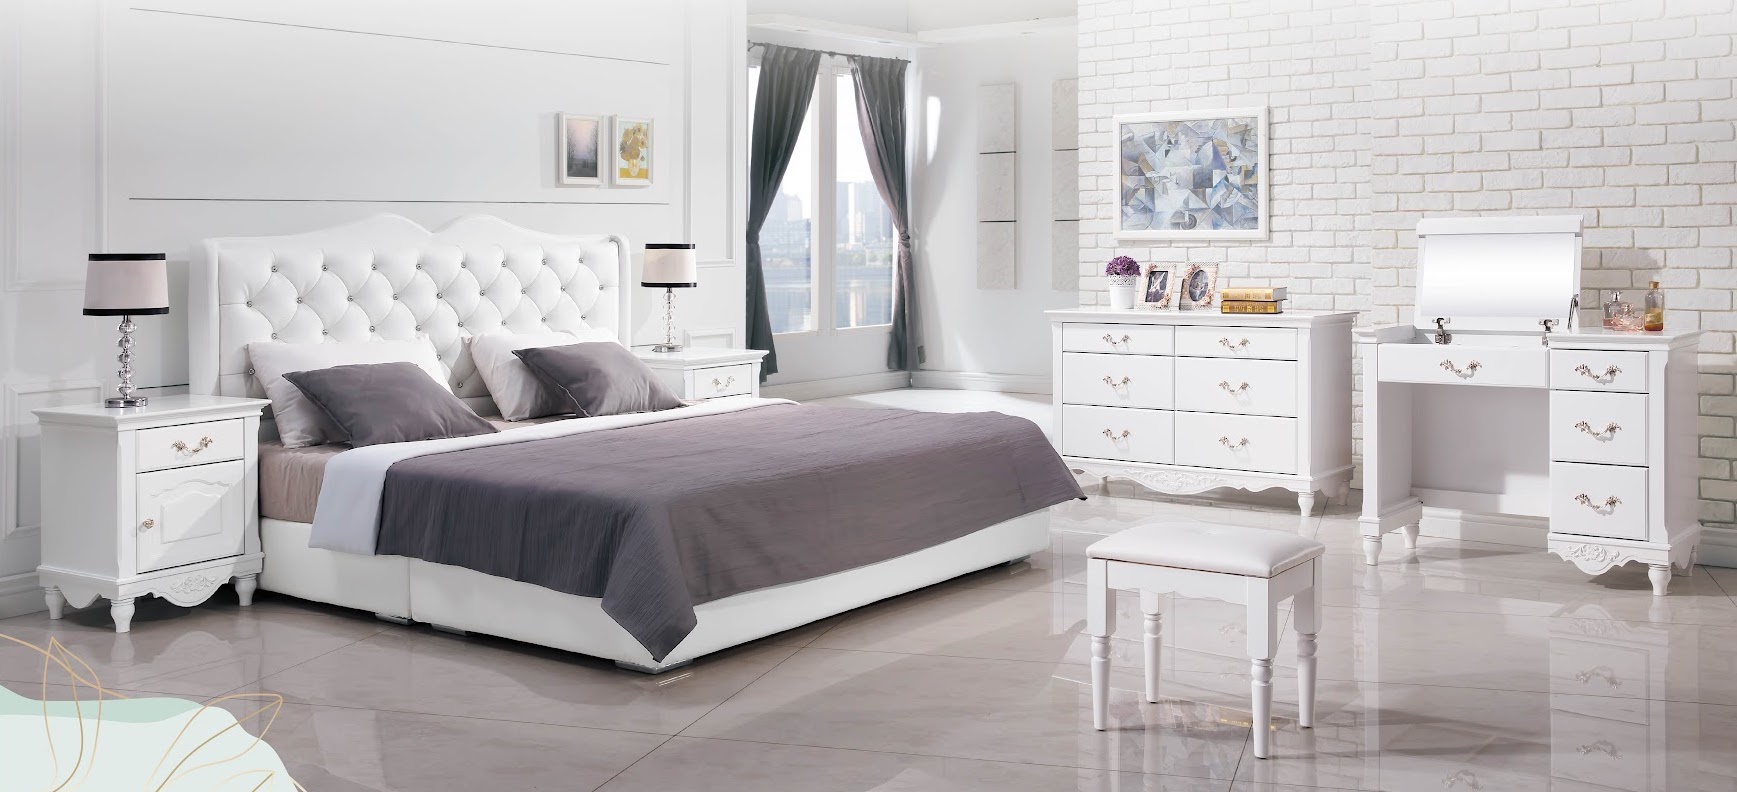 奧莉薇歐風斗櫃 床組 化妝台 床頭櫃